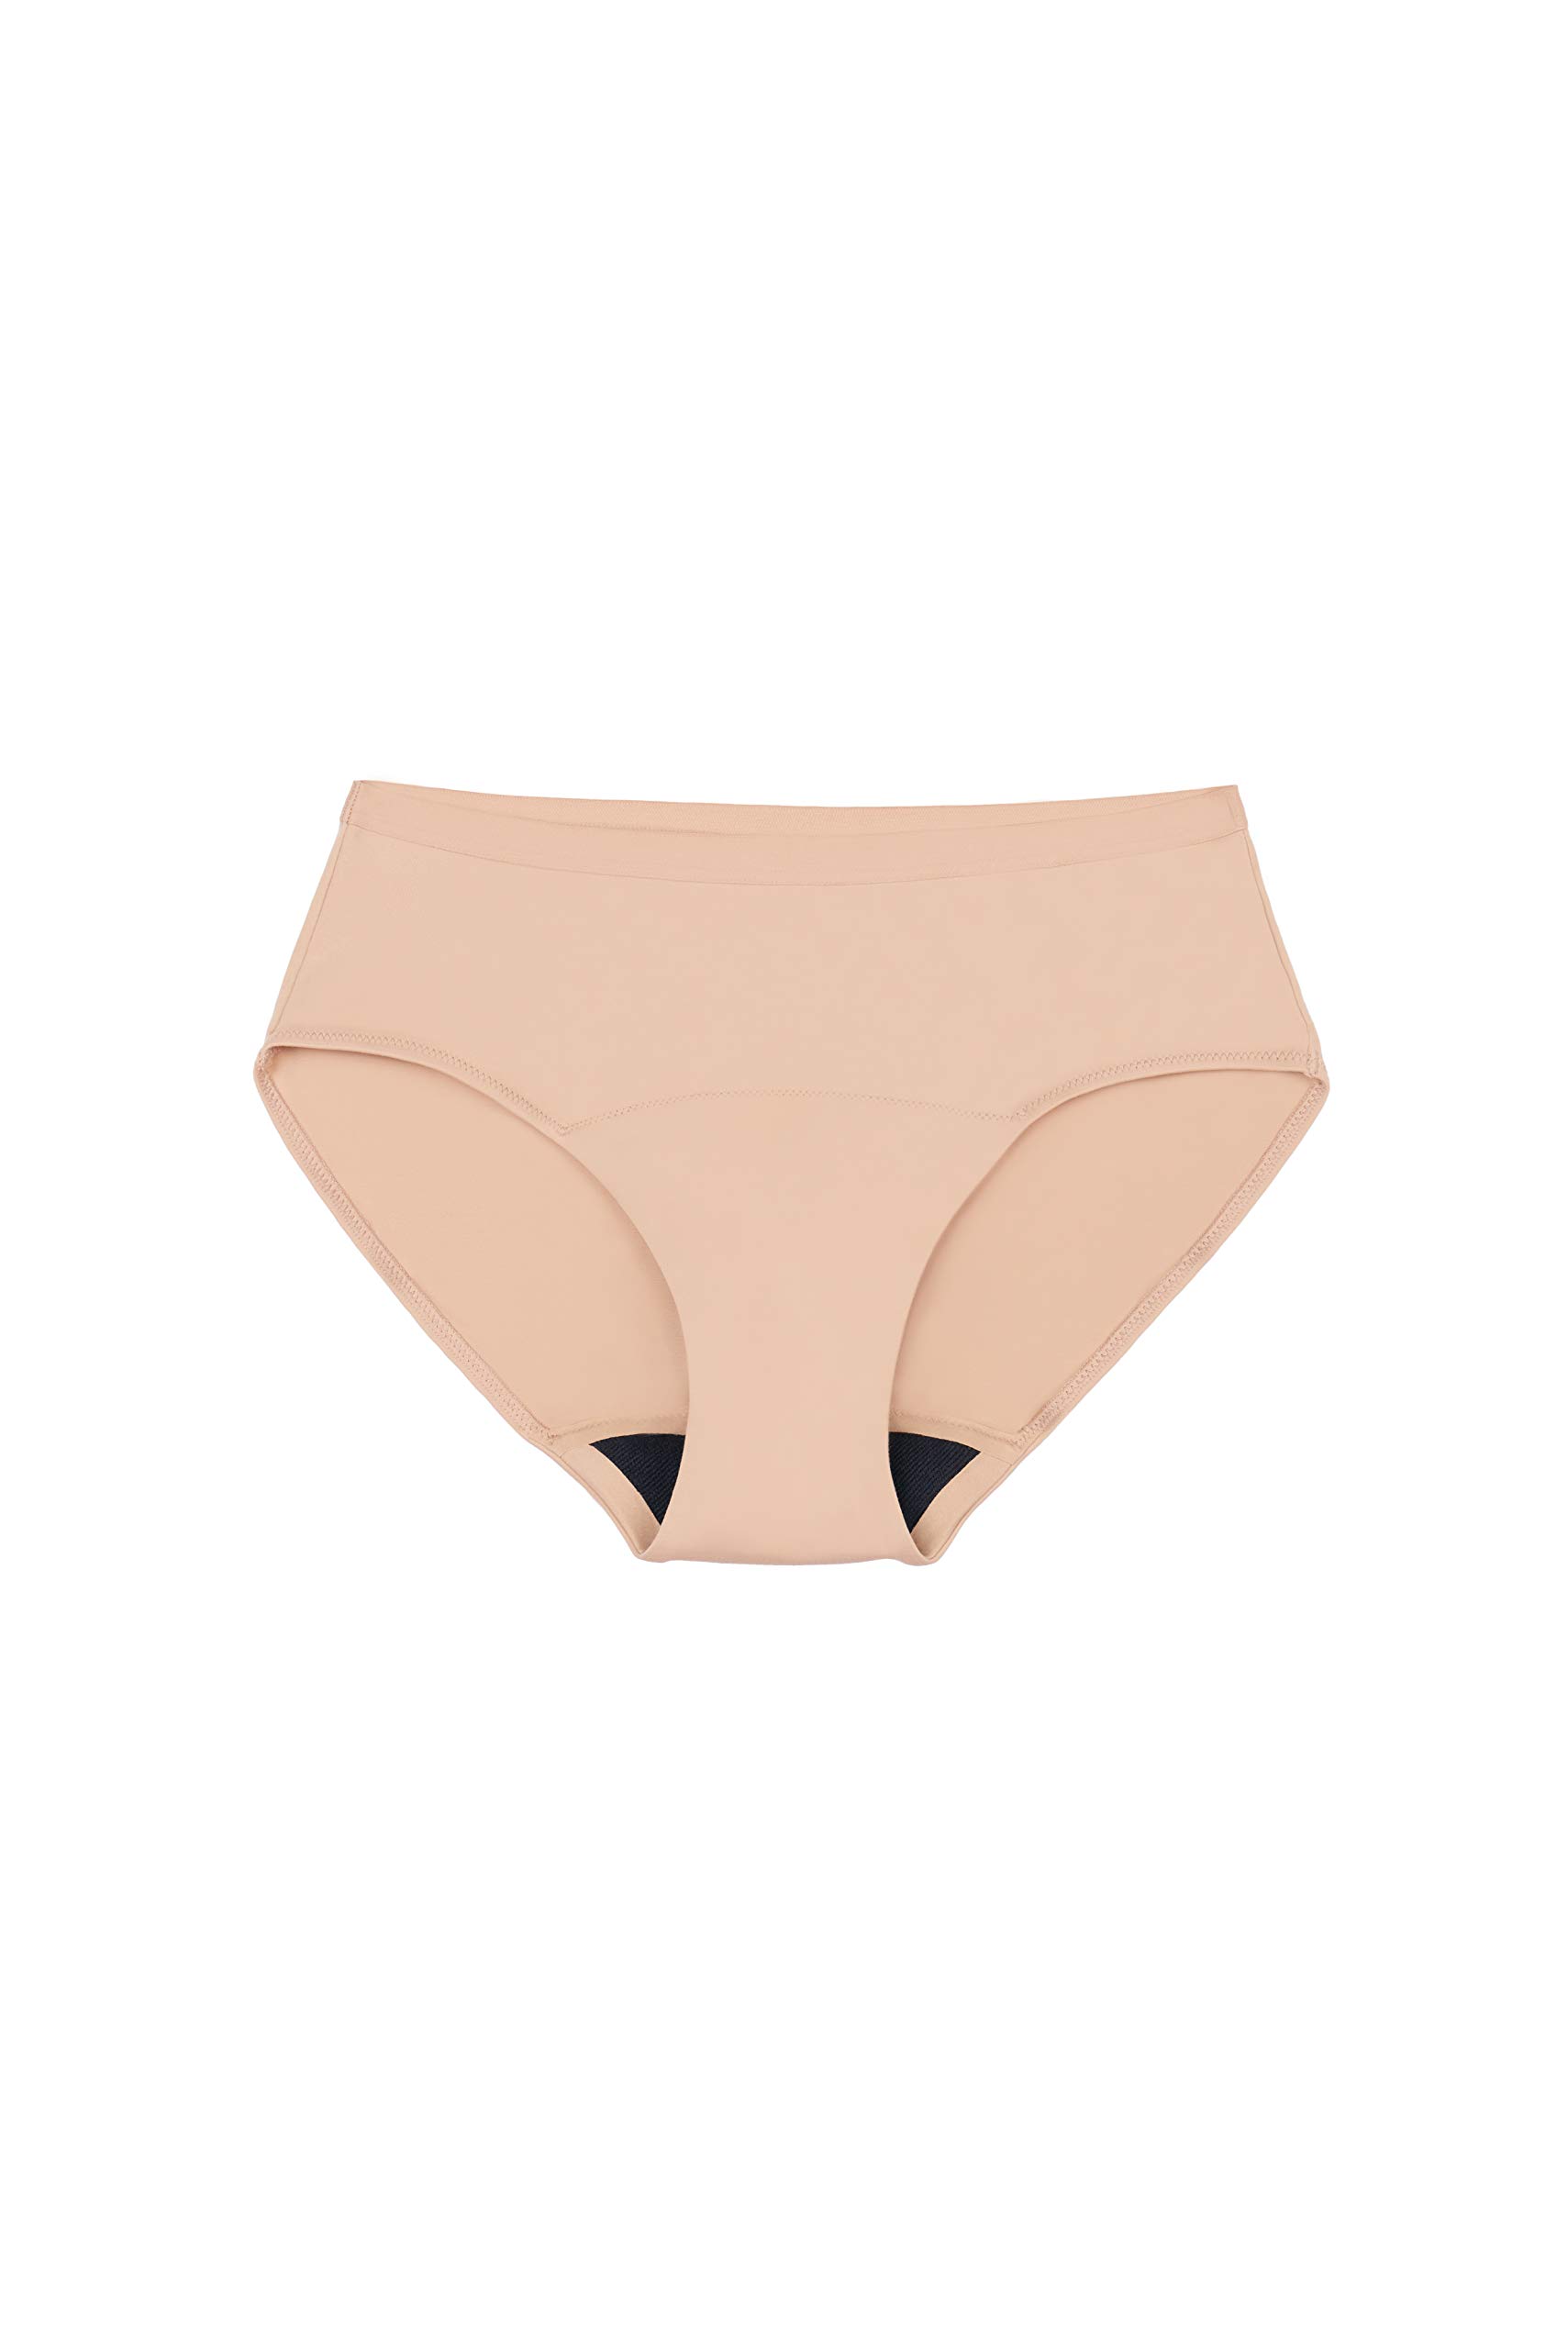 Speax by Thinx Bikini Women's Underwear for Bladder Leak